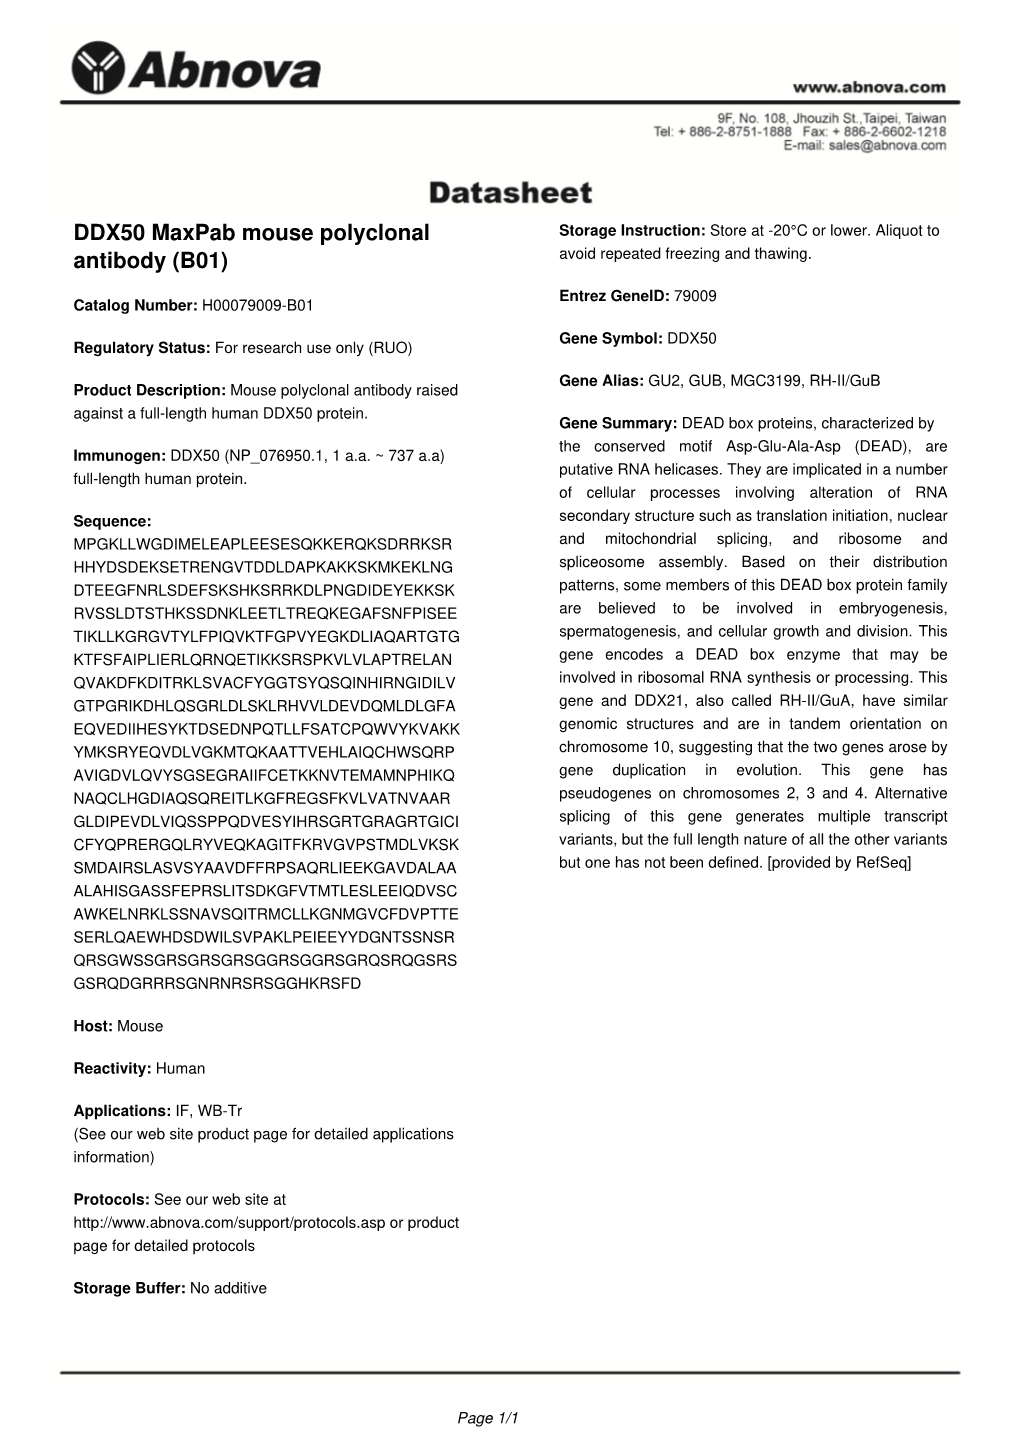 DDX50 Maxpab Mouse Polyclonal Antibody (B01)